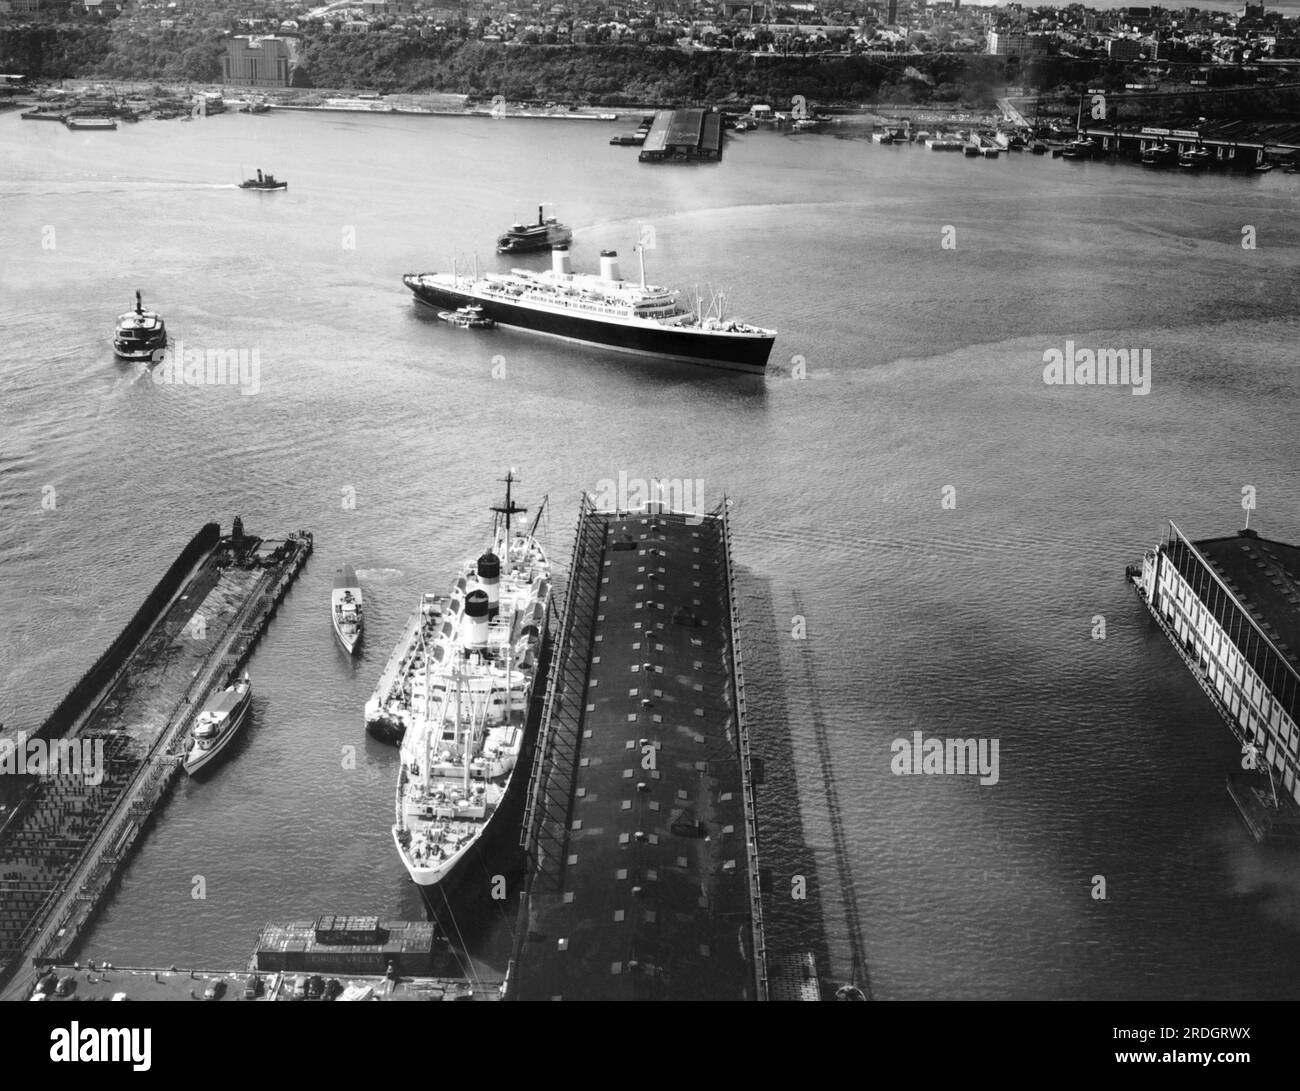 New York, New York: Juni 1951 die S.S. Die Unabhängigkeit bereitet sich darauf vor, im Hafen von New York mit S.S. anzulegen La Guardia ist schon am Pier. Stockfoto